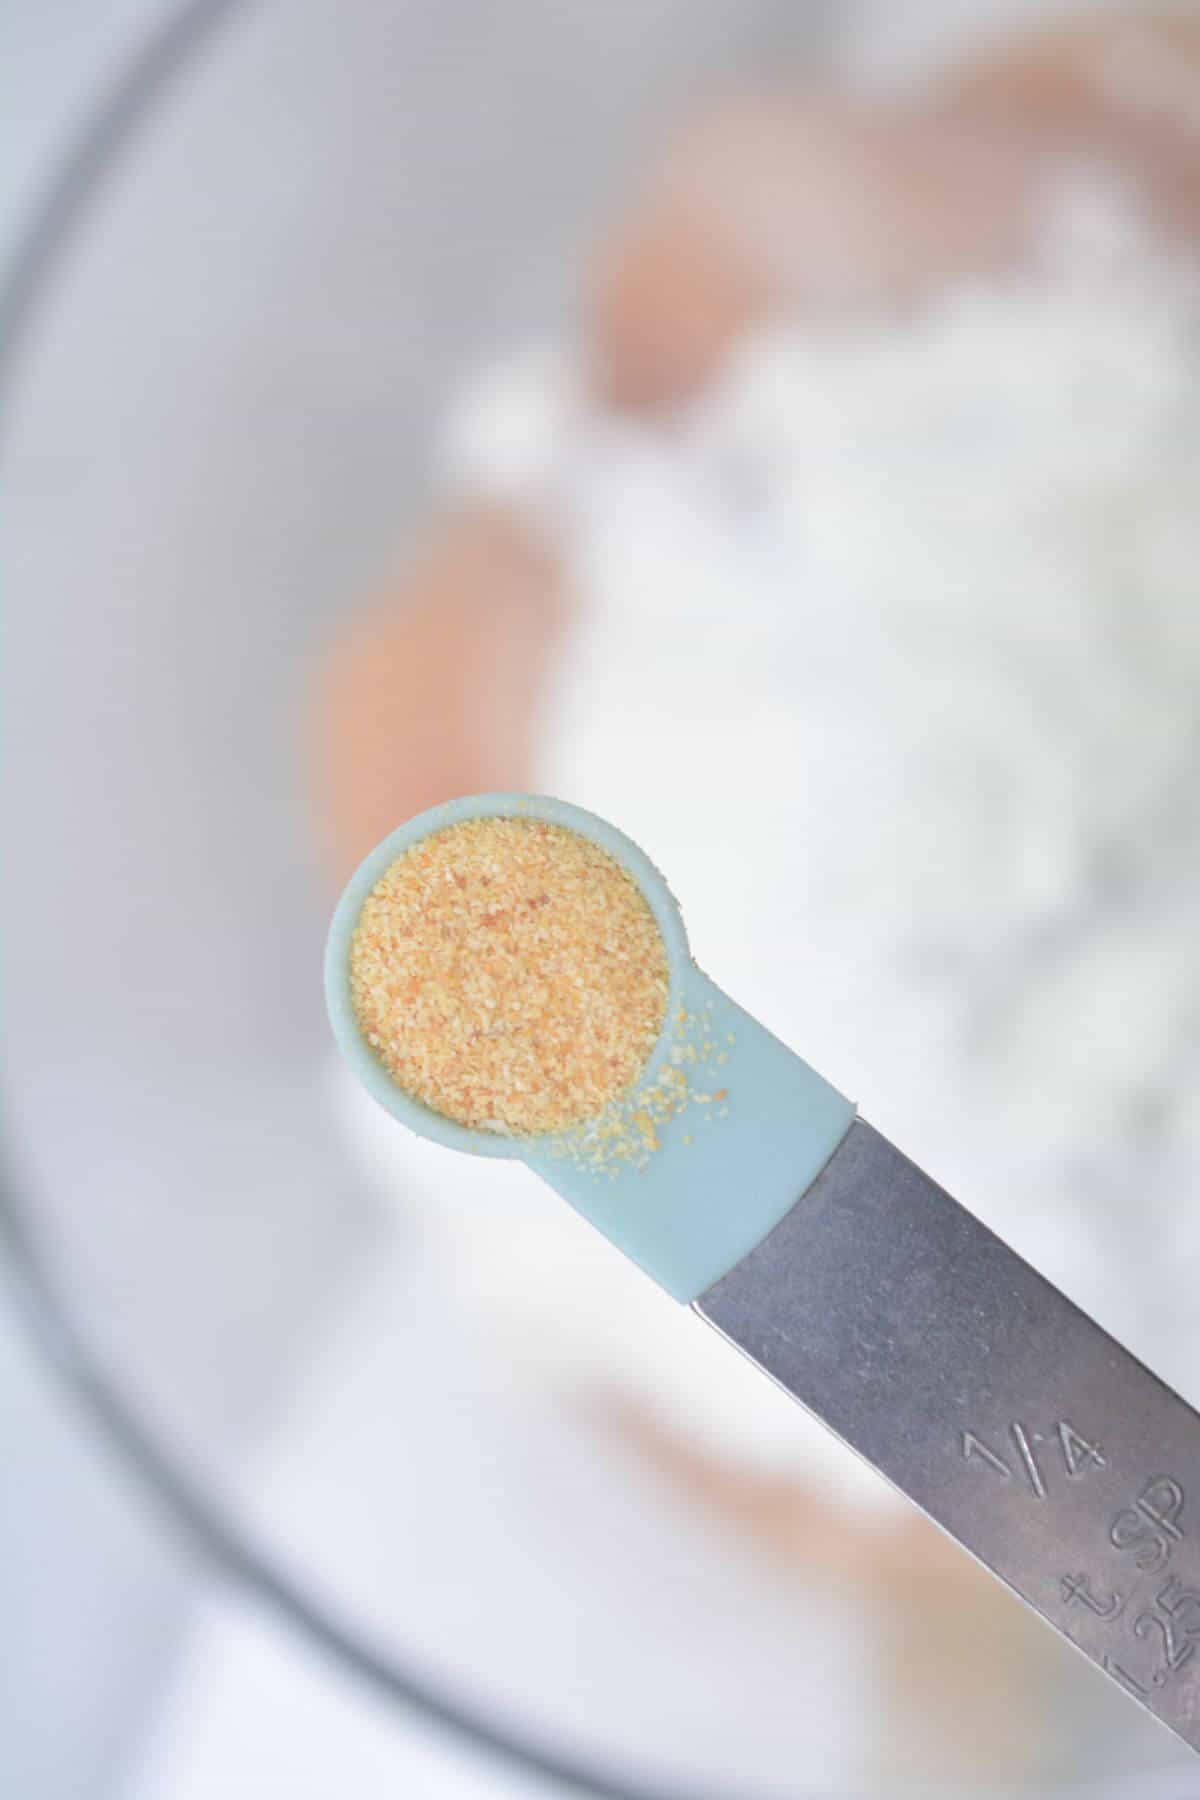 Adding garlic powder to bowl.